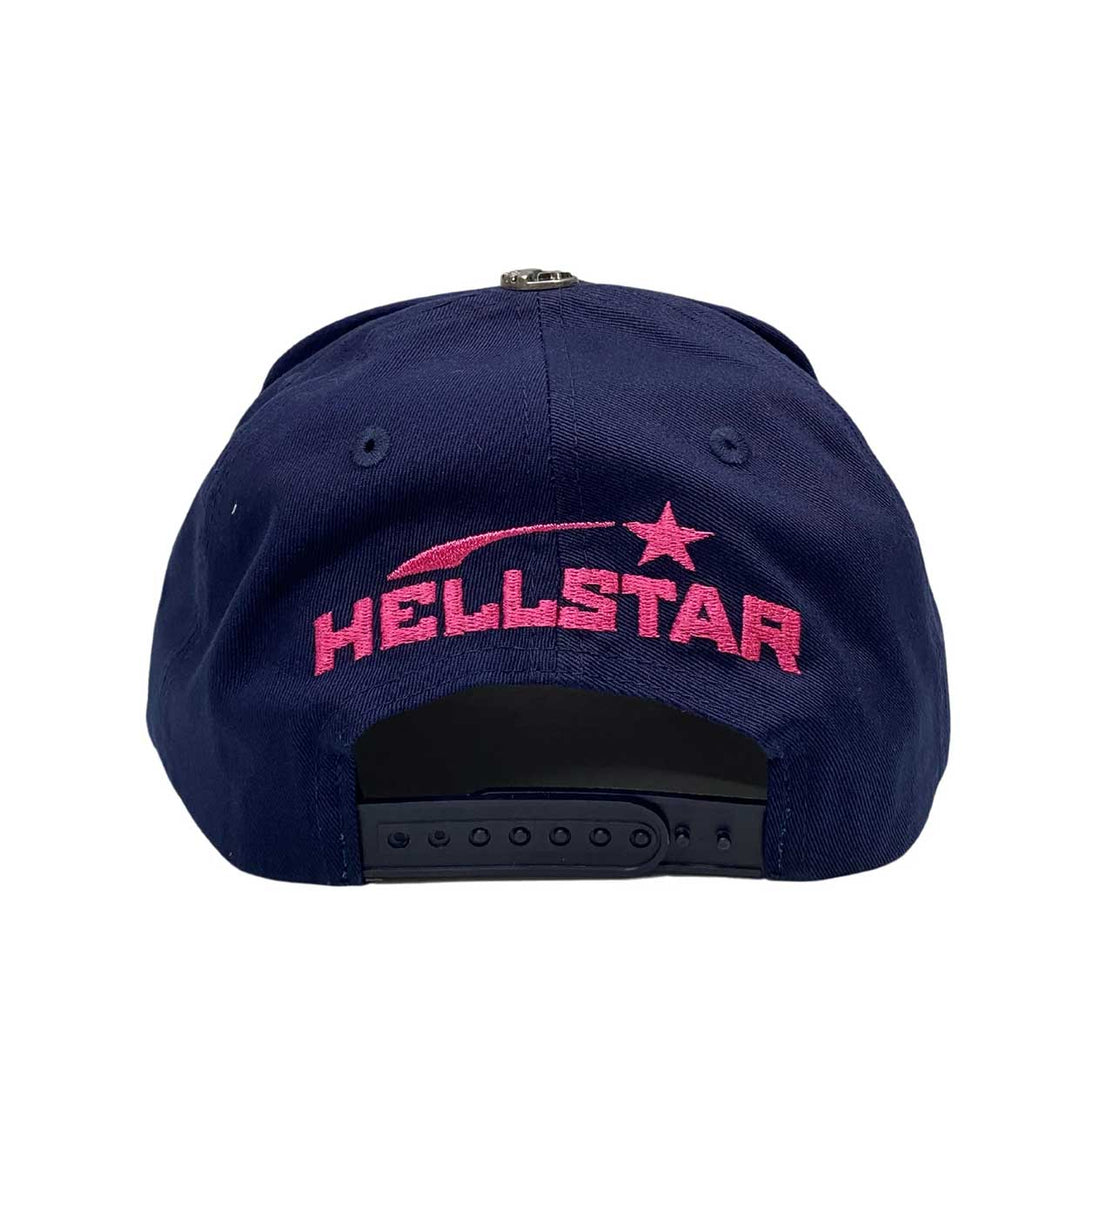 Hellstar Navy Snapback Back View